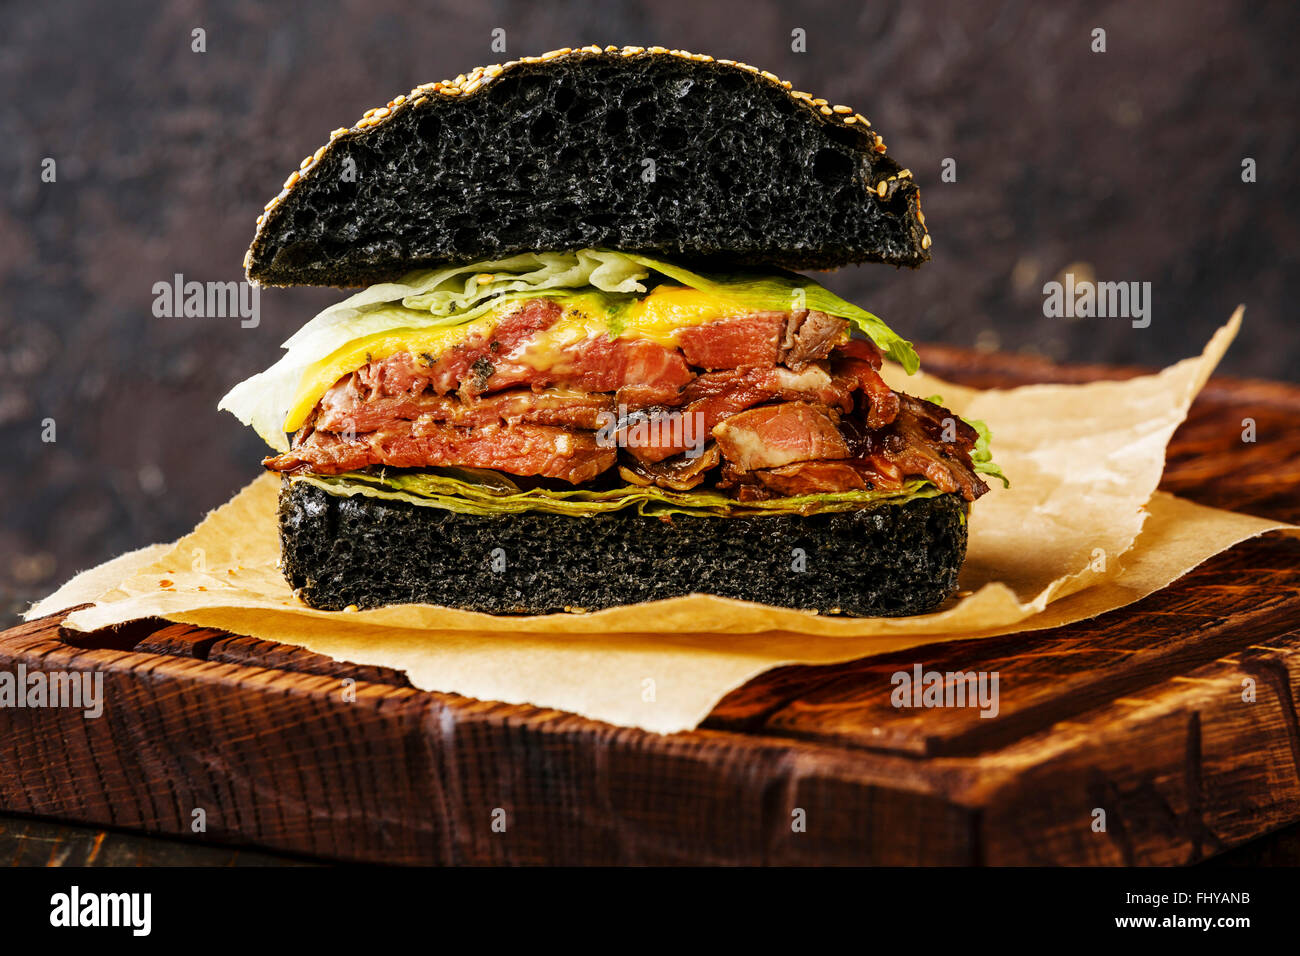 Schneiden Sie in halbe Roastbeef Burger mit in Scheiben geschnittenen Pastrami auf dunklem Hintergrund Stockfoto